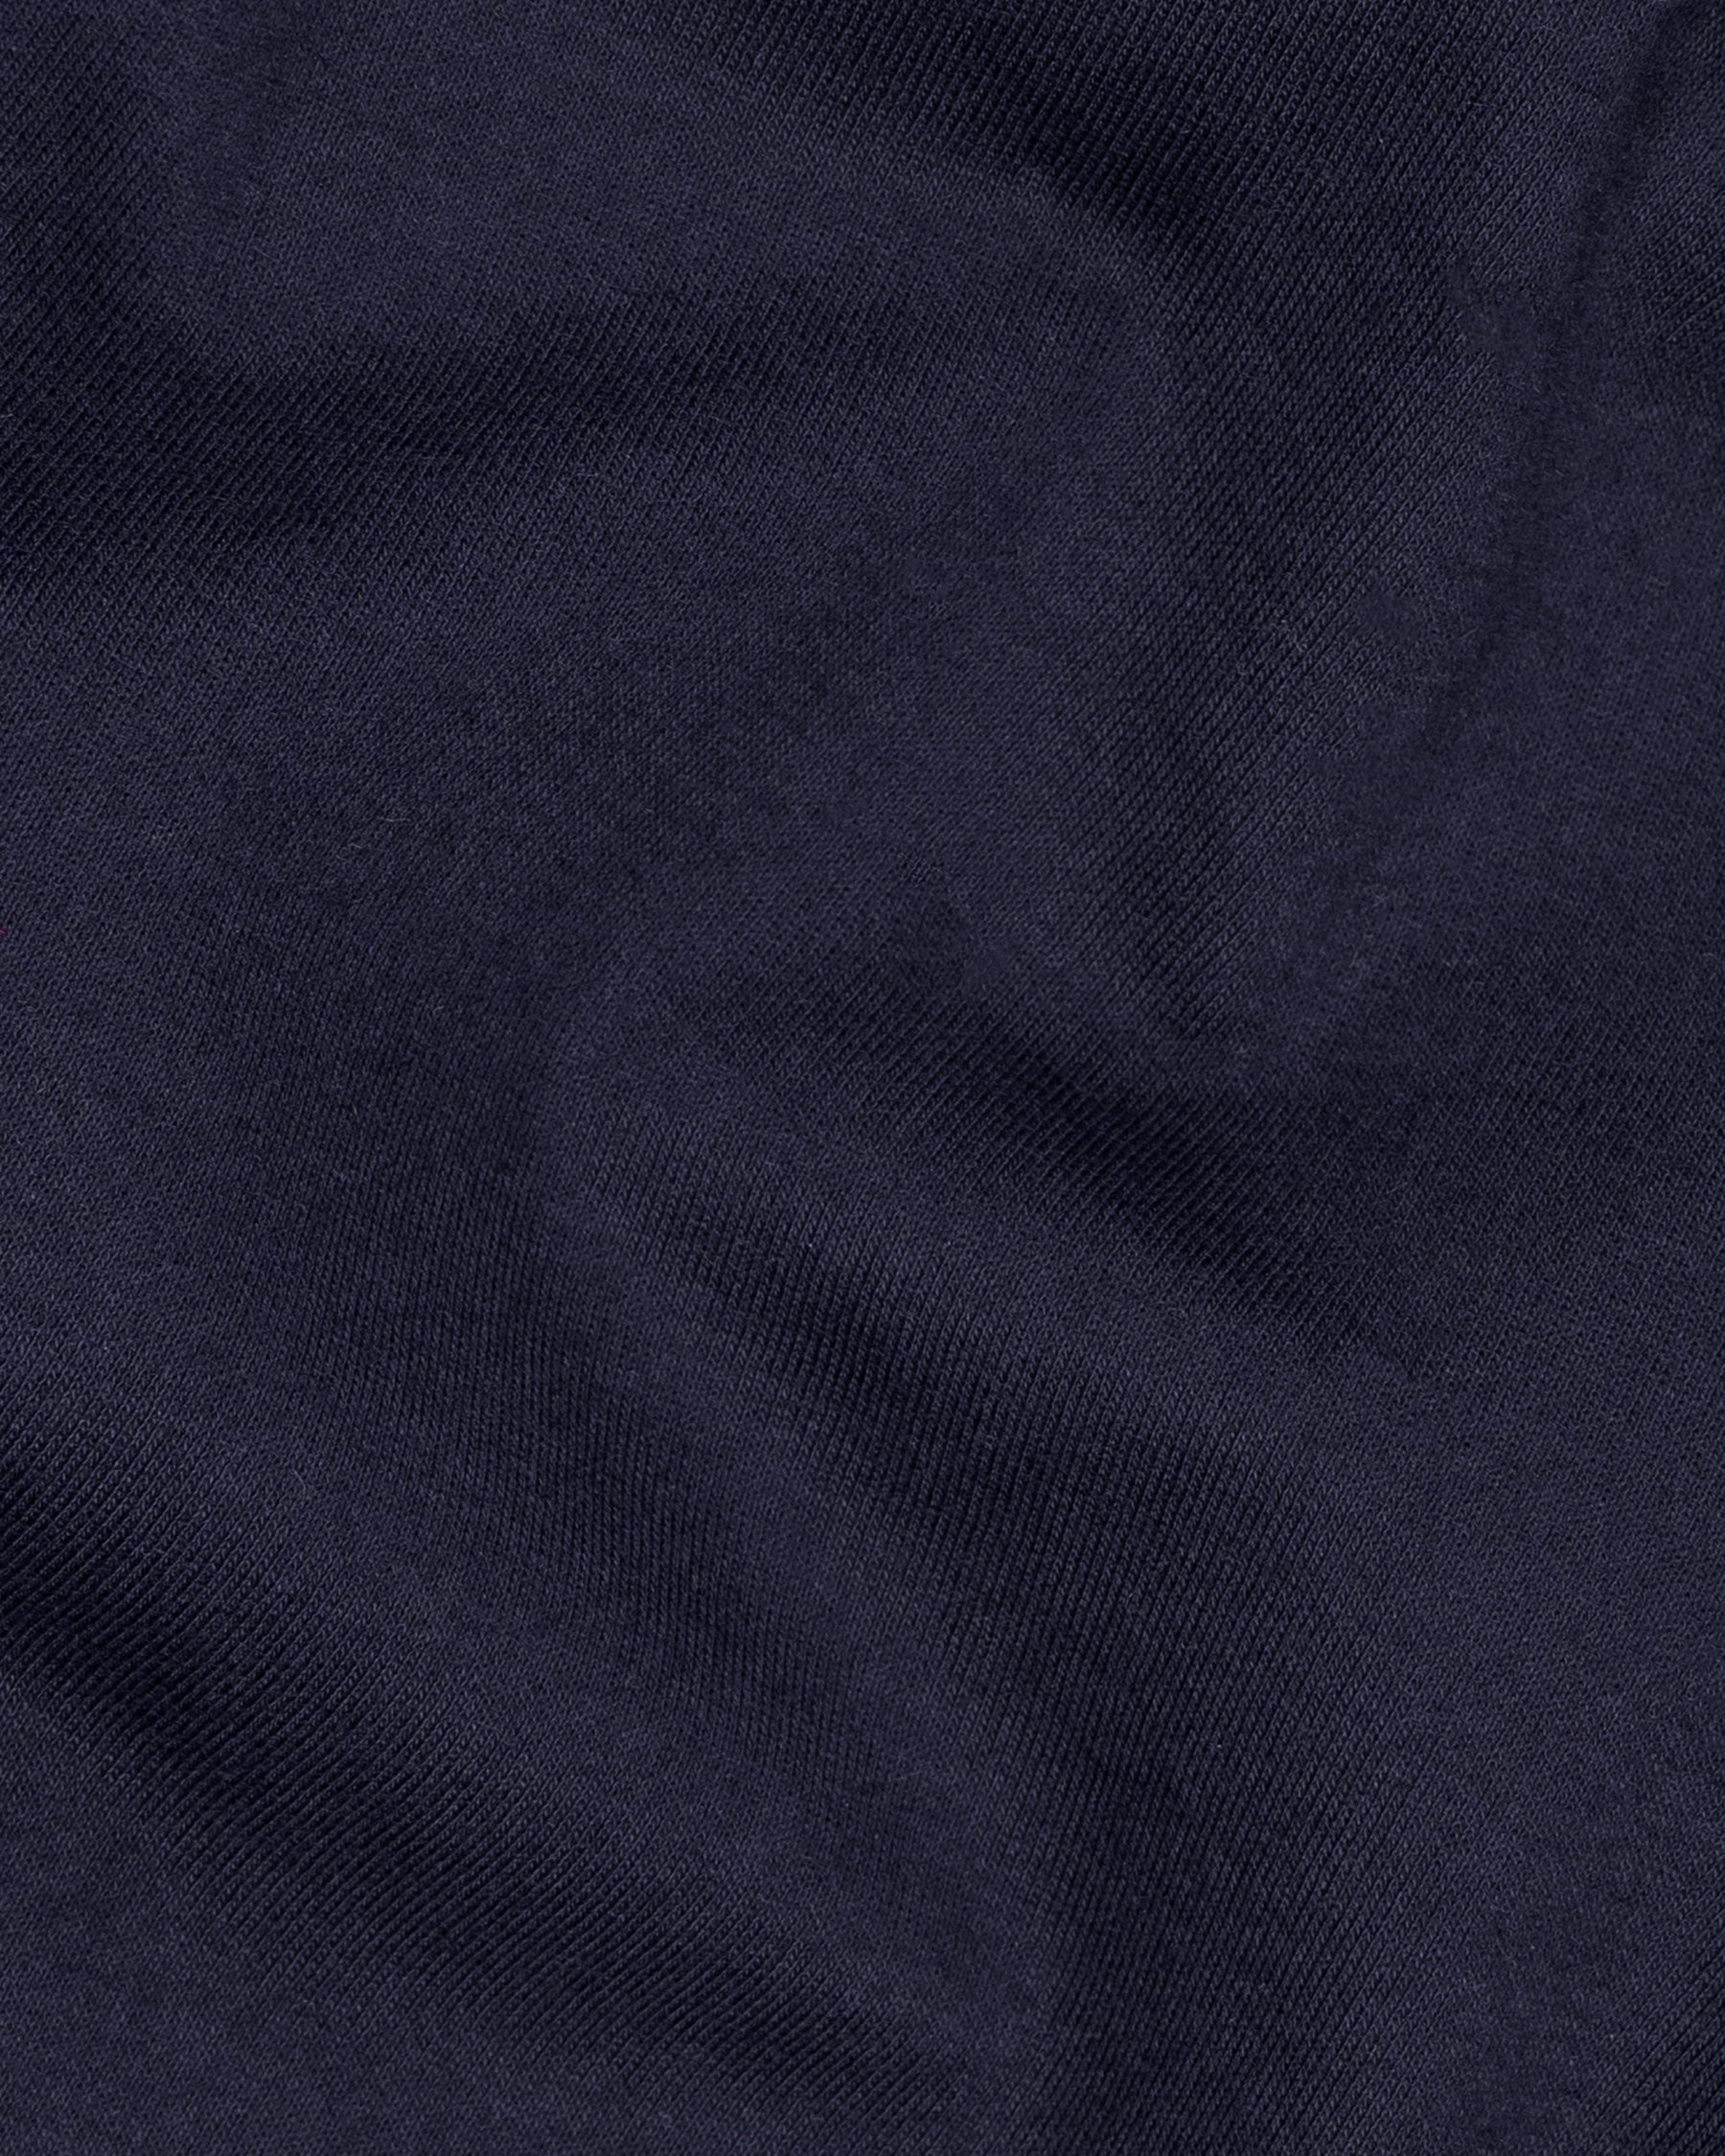 Midnight Express Full Sleeve Premium Cotton Jersey Sweatshirt TS473-S, TS473-M, TS473-L, TS473-XL, TS473-XXL